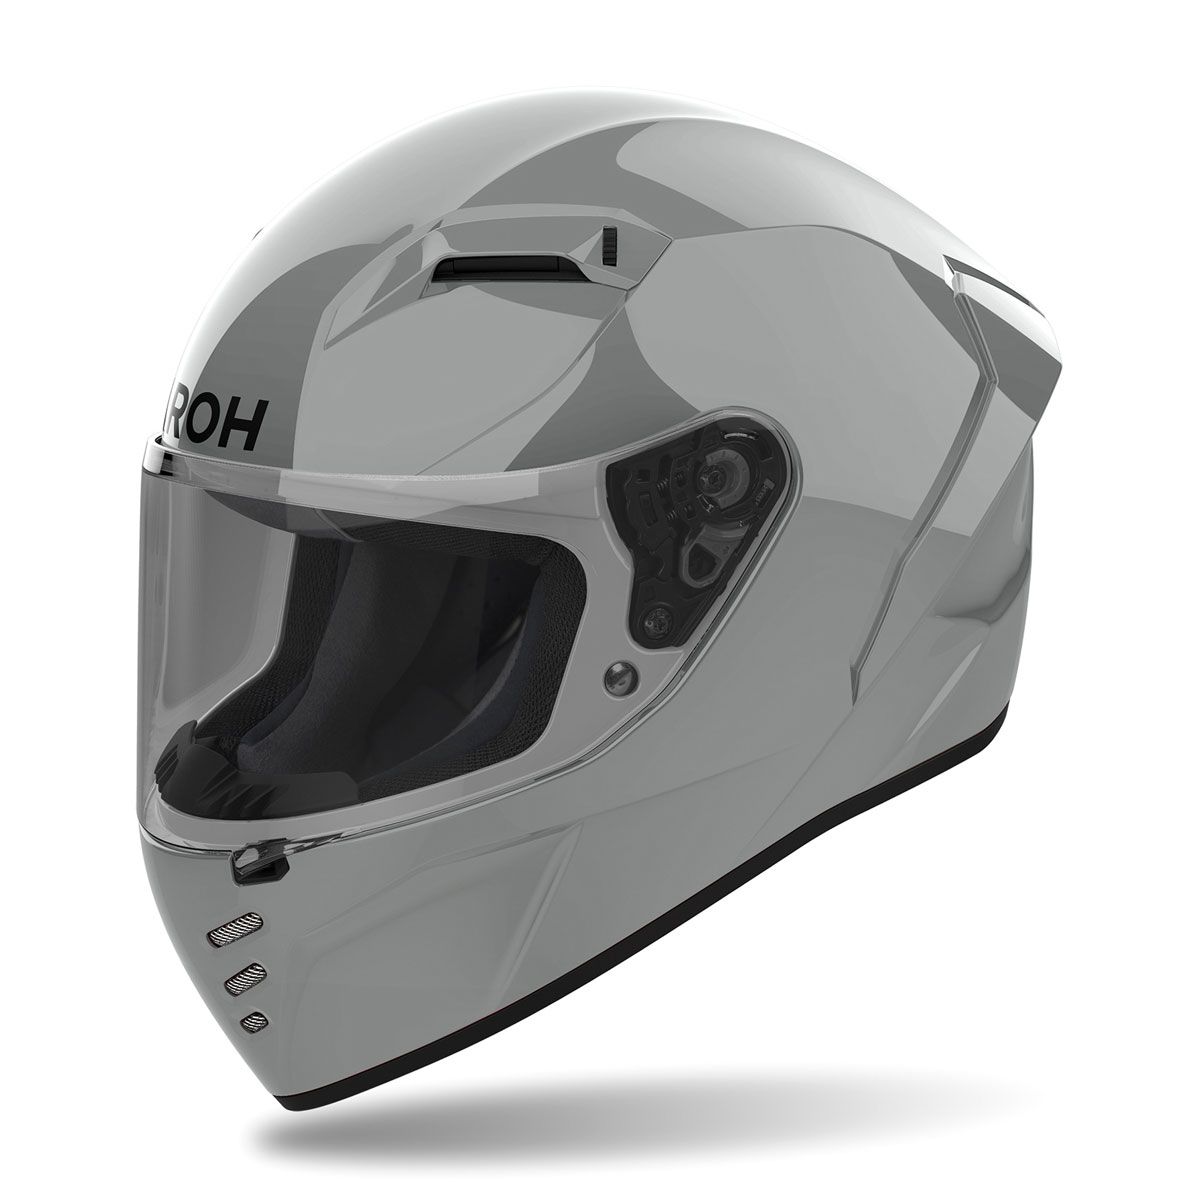 AIROH CN98 casco integrale connor grigio cemento lucido